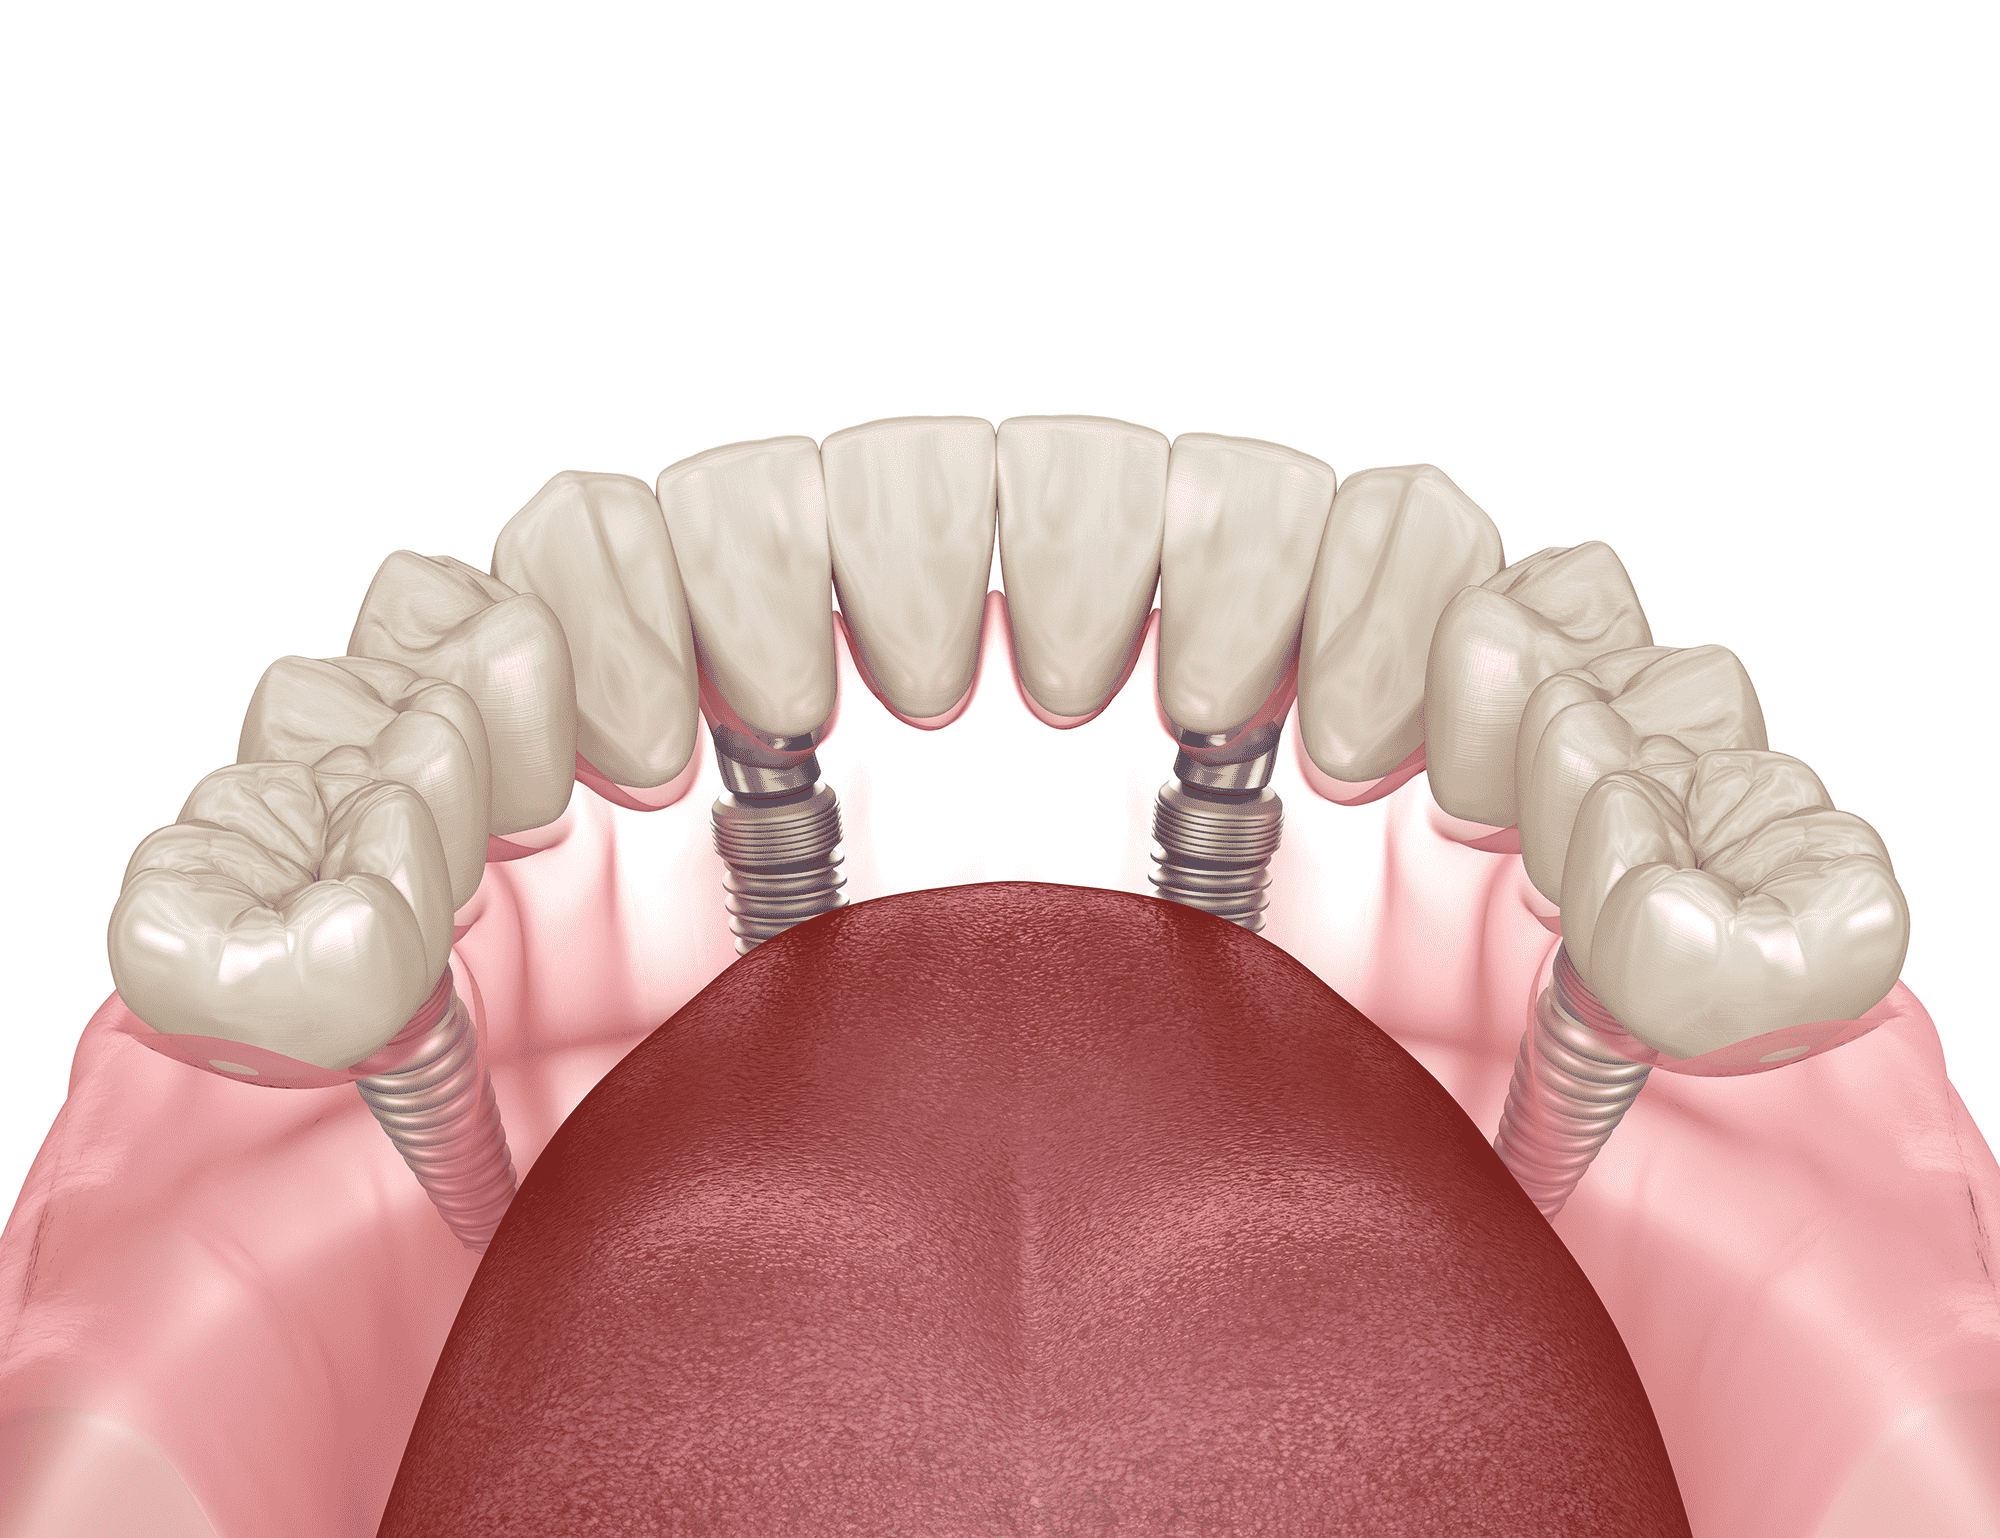 all on for dental implants implant horizon dental dentist in taylorsville utah Dr. Joshua Frandsen dds